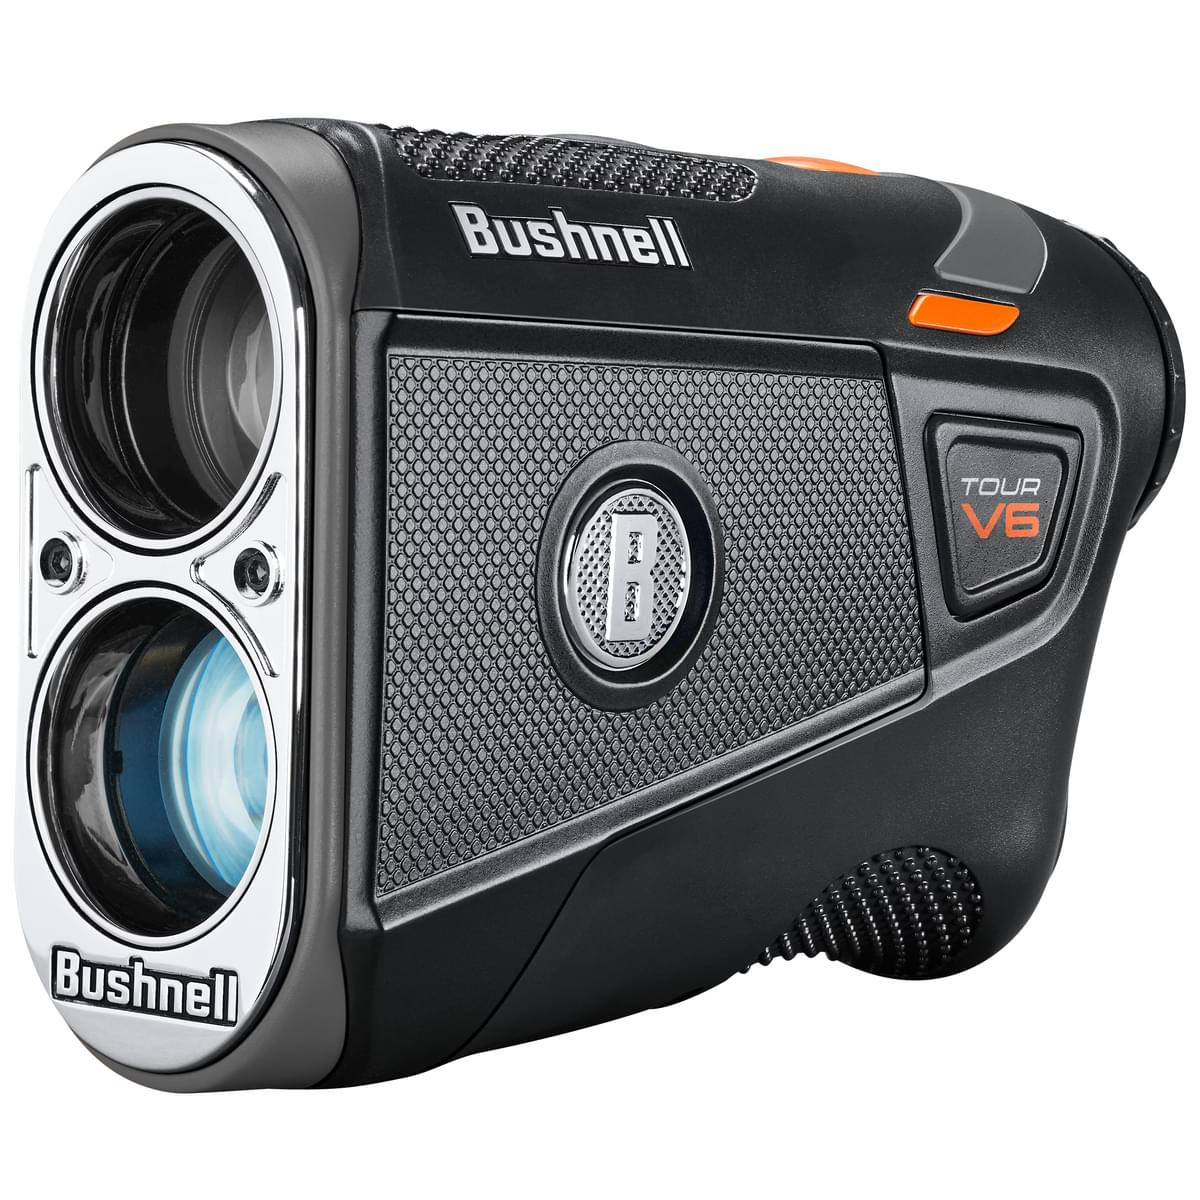 Bushnell Tour V6 Laser Golf Rangefinder